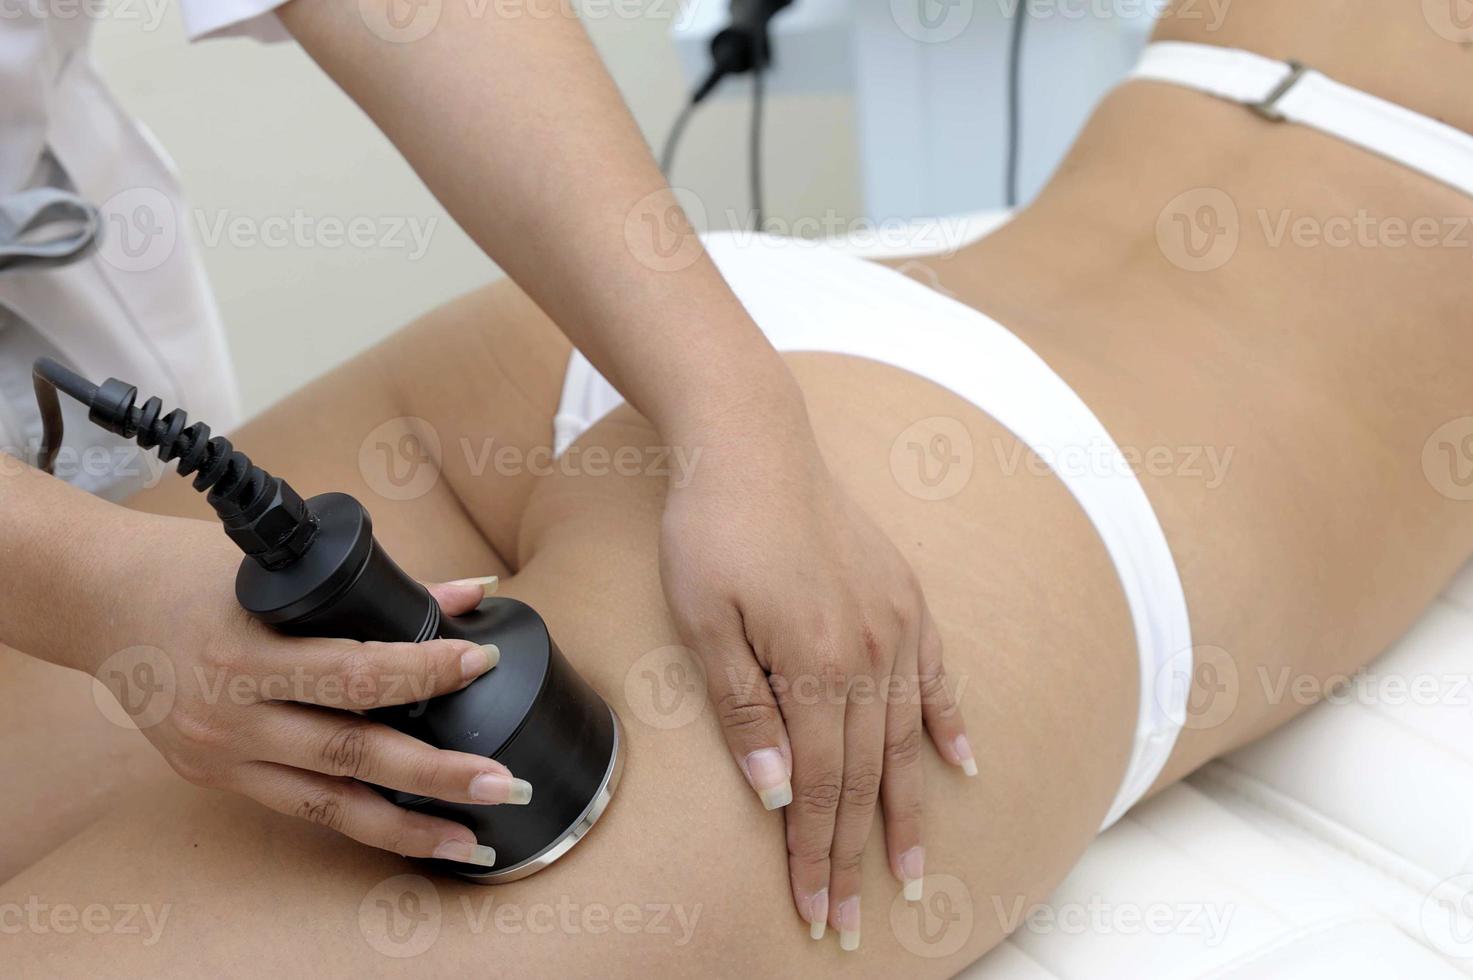 kosmetologi närbild av kosmetolog gör laser epilering behandling på vackra kvinnliga kroppen tar bort hår på silkeslen hud foto